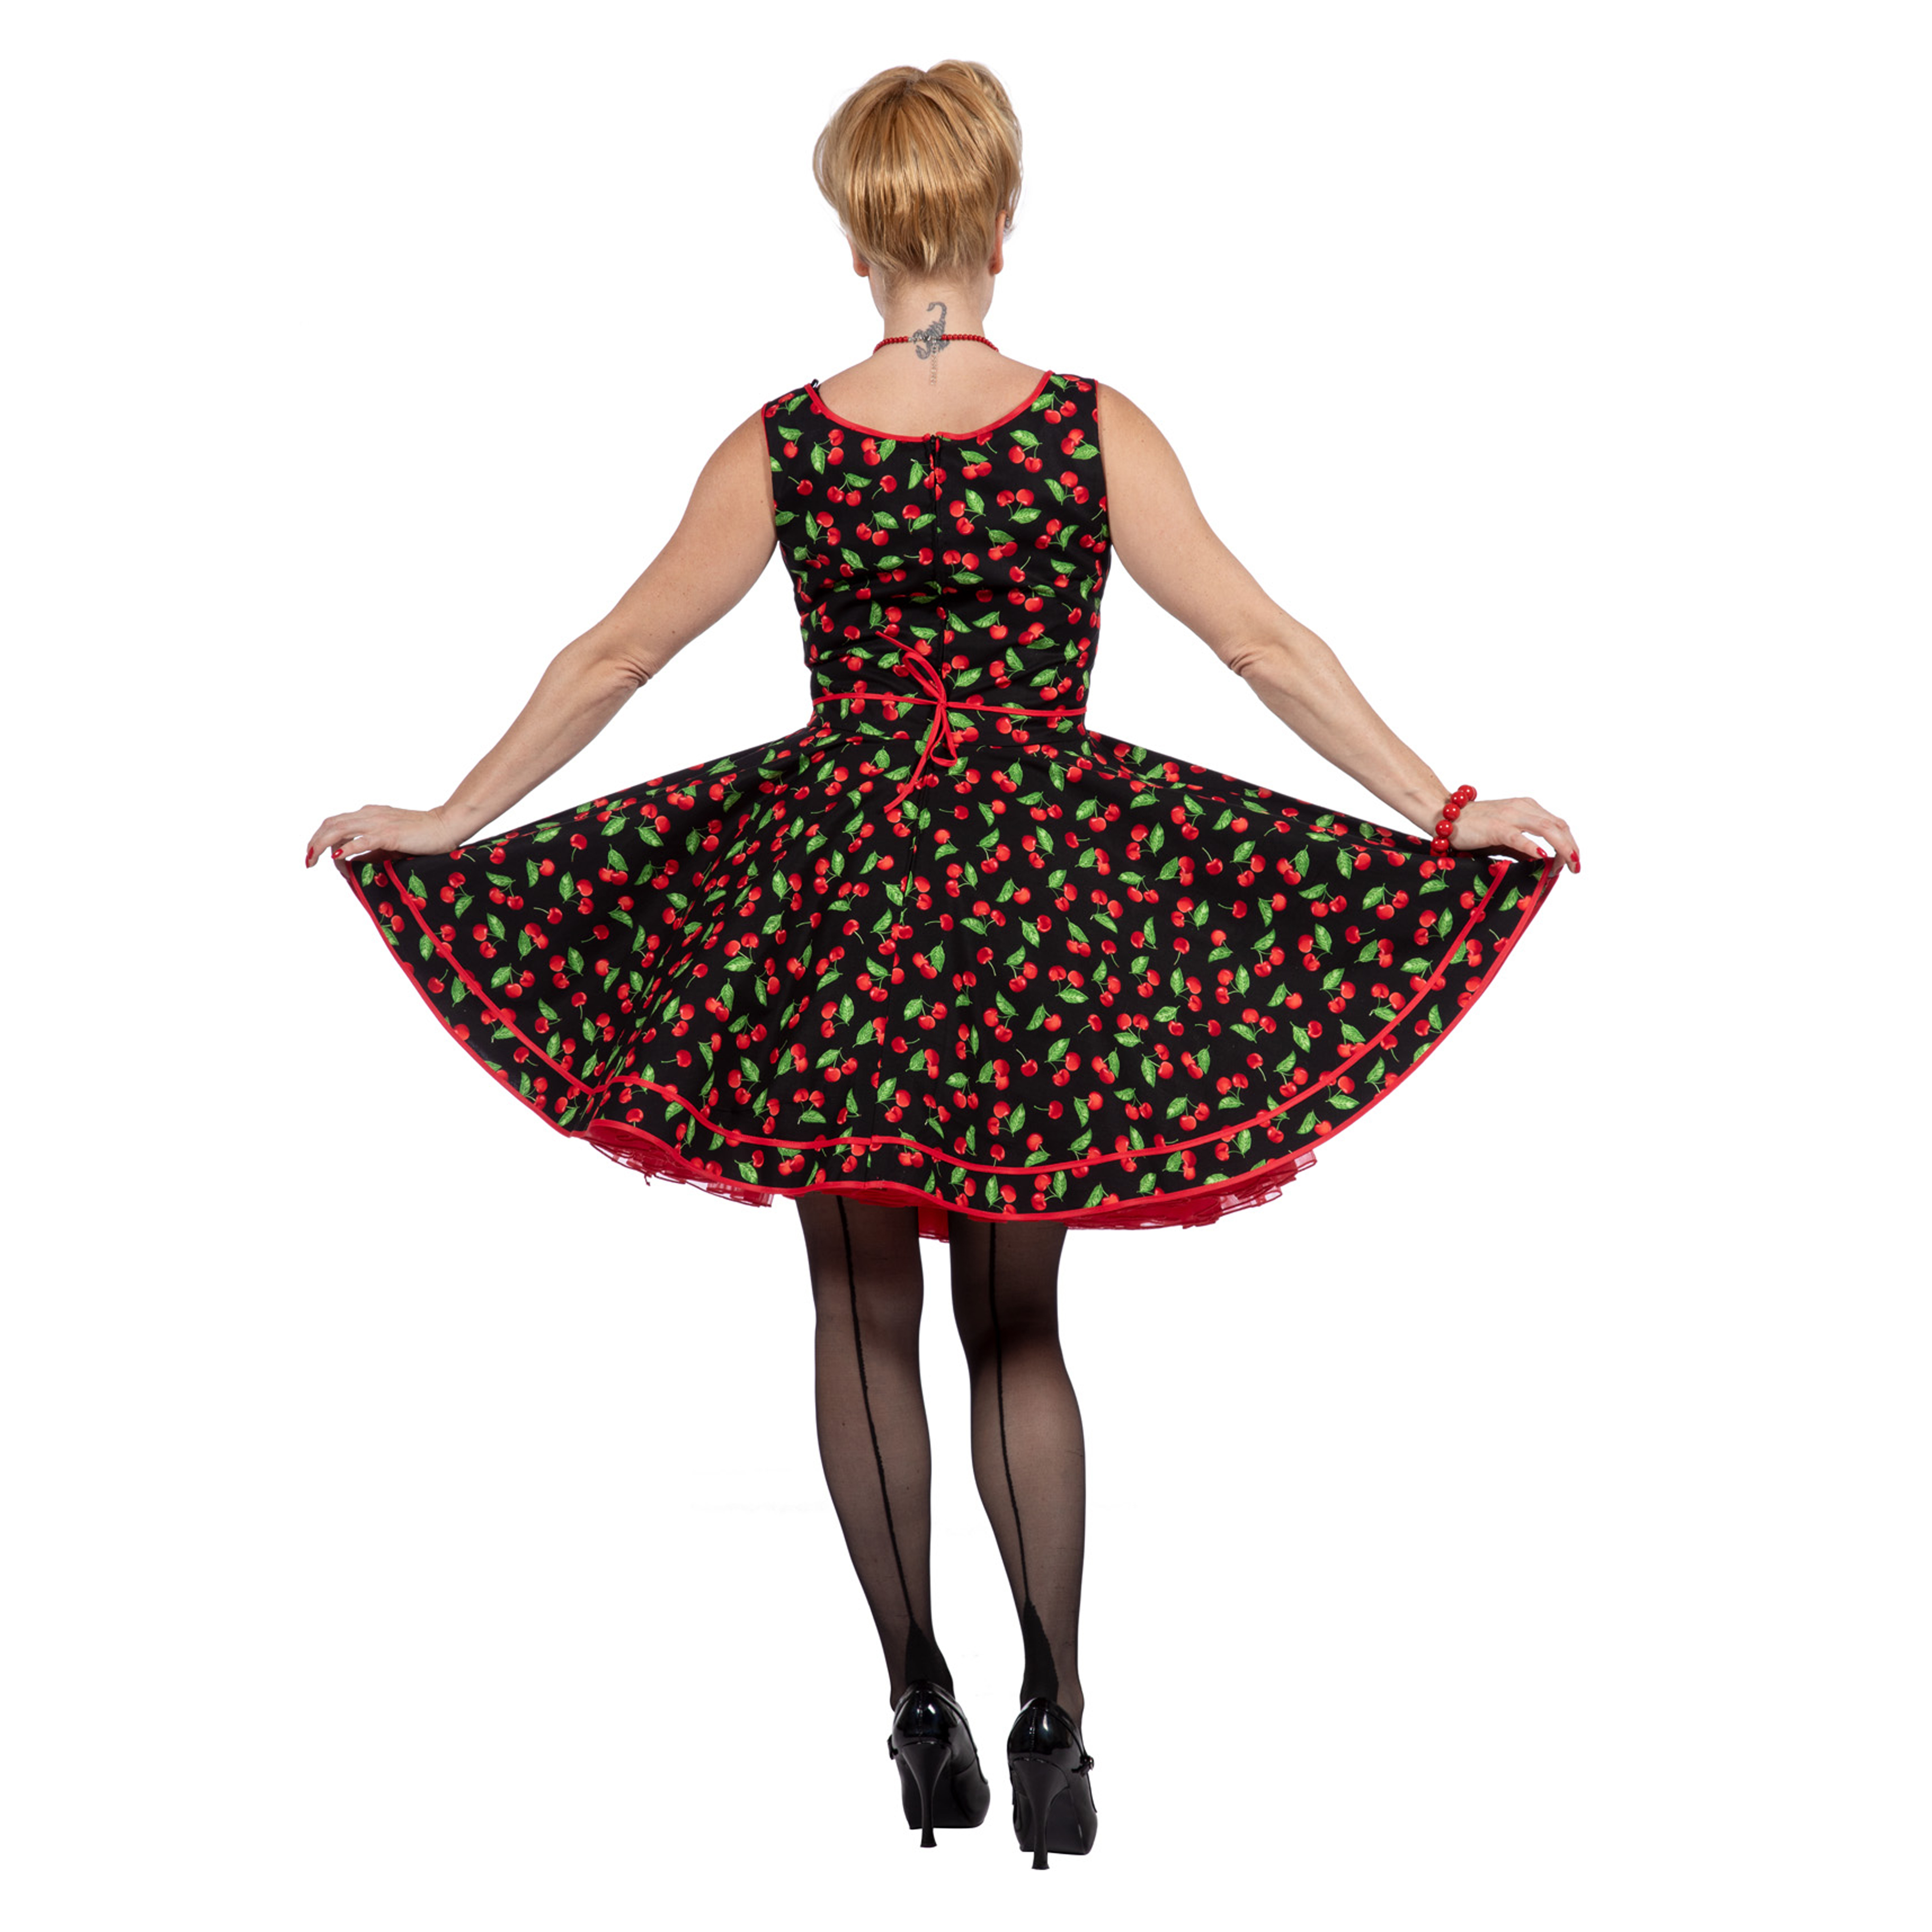 Premium-Line Damen-Kleid Rockabilly Cherry, Gr. 48 Bild 3